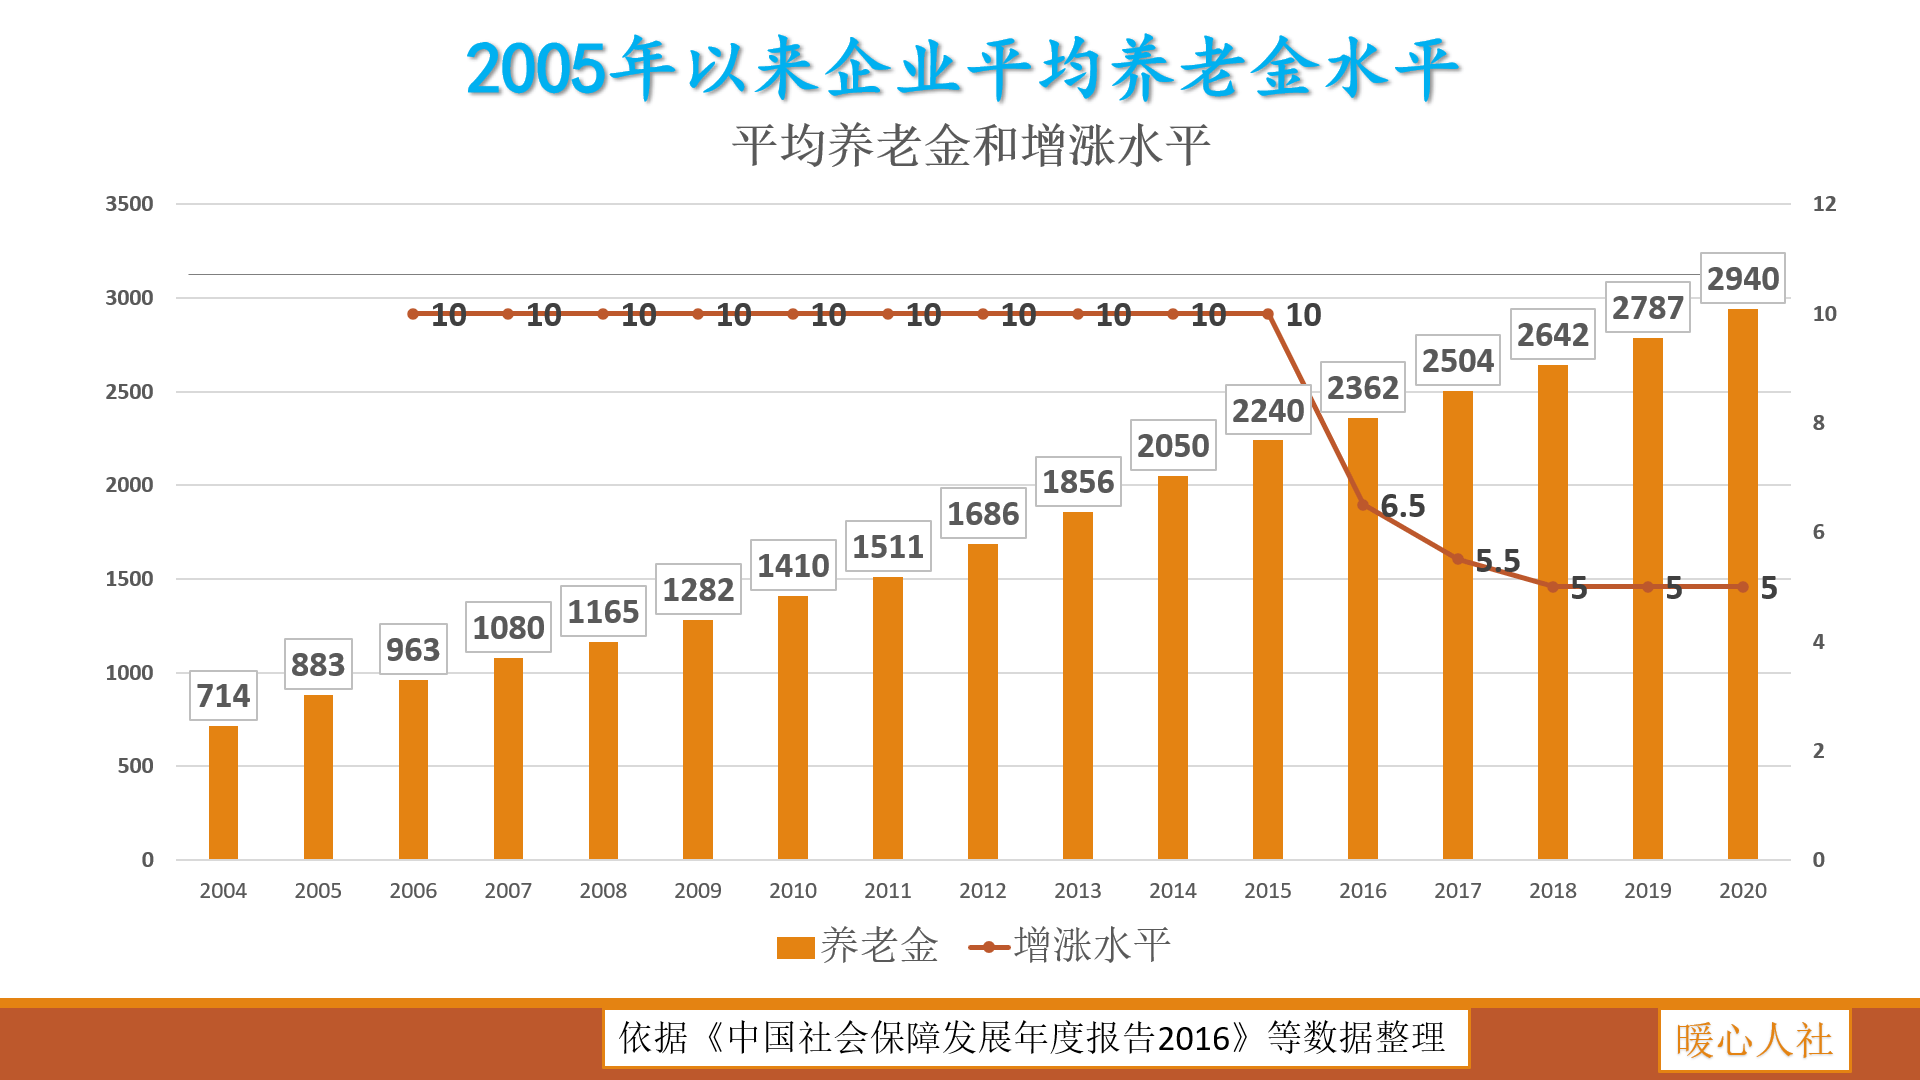 盘锦人口2021_2021国考盘锦地区报名人数分析 审核通过人数已达501人,仍有1个岗